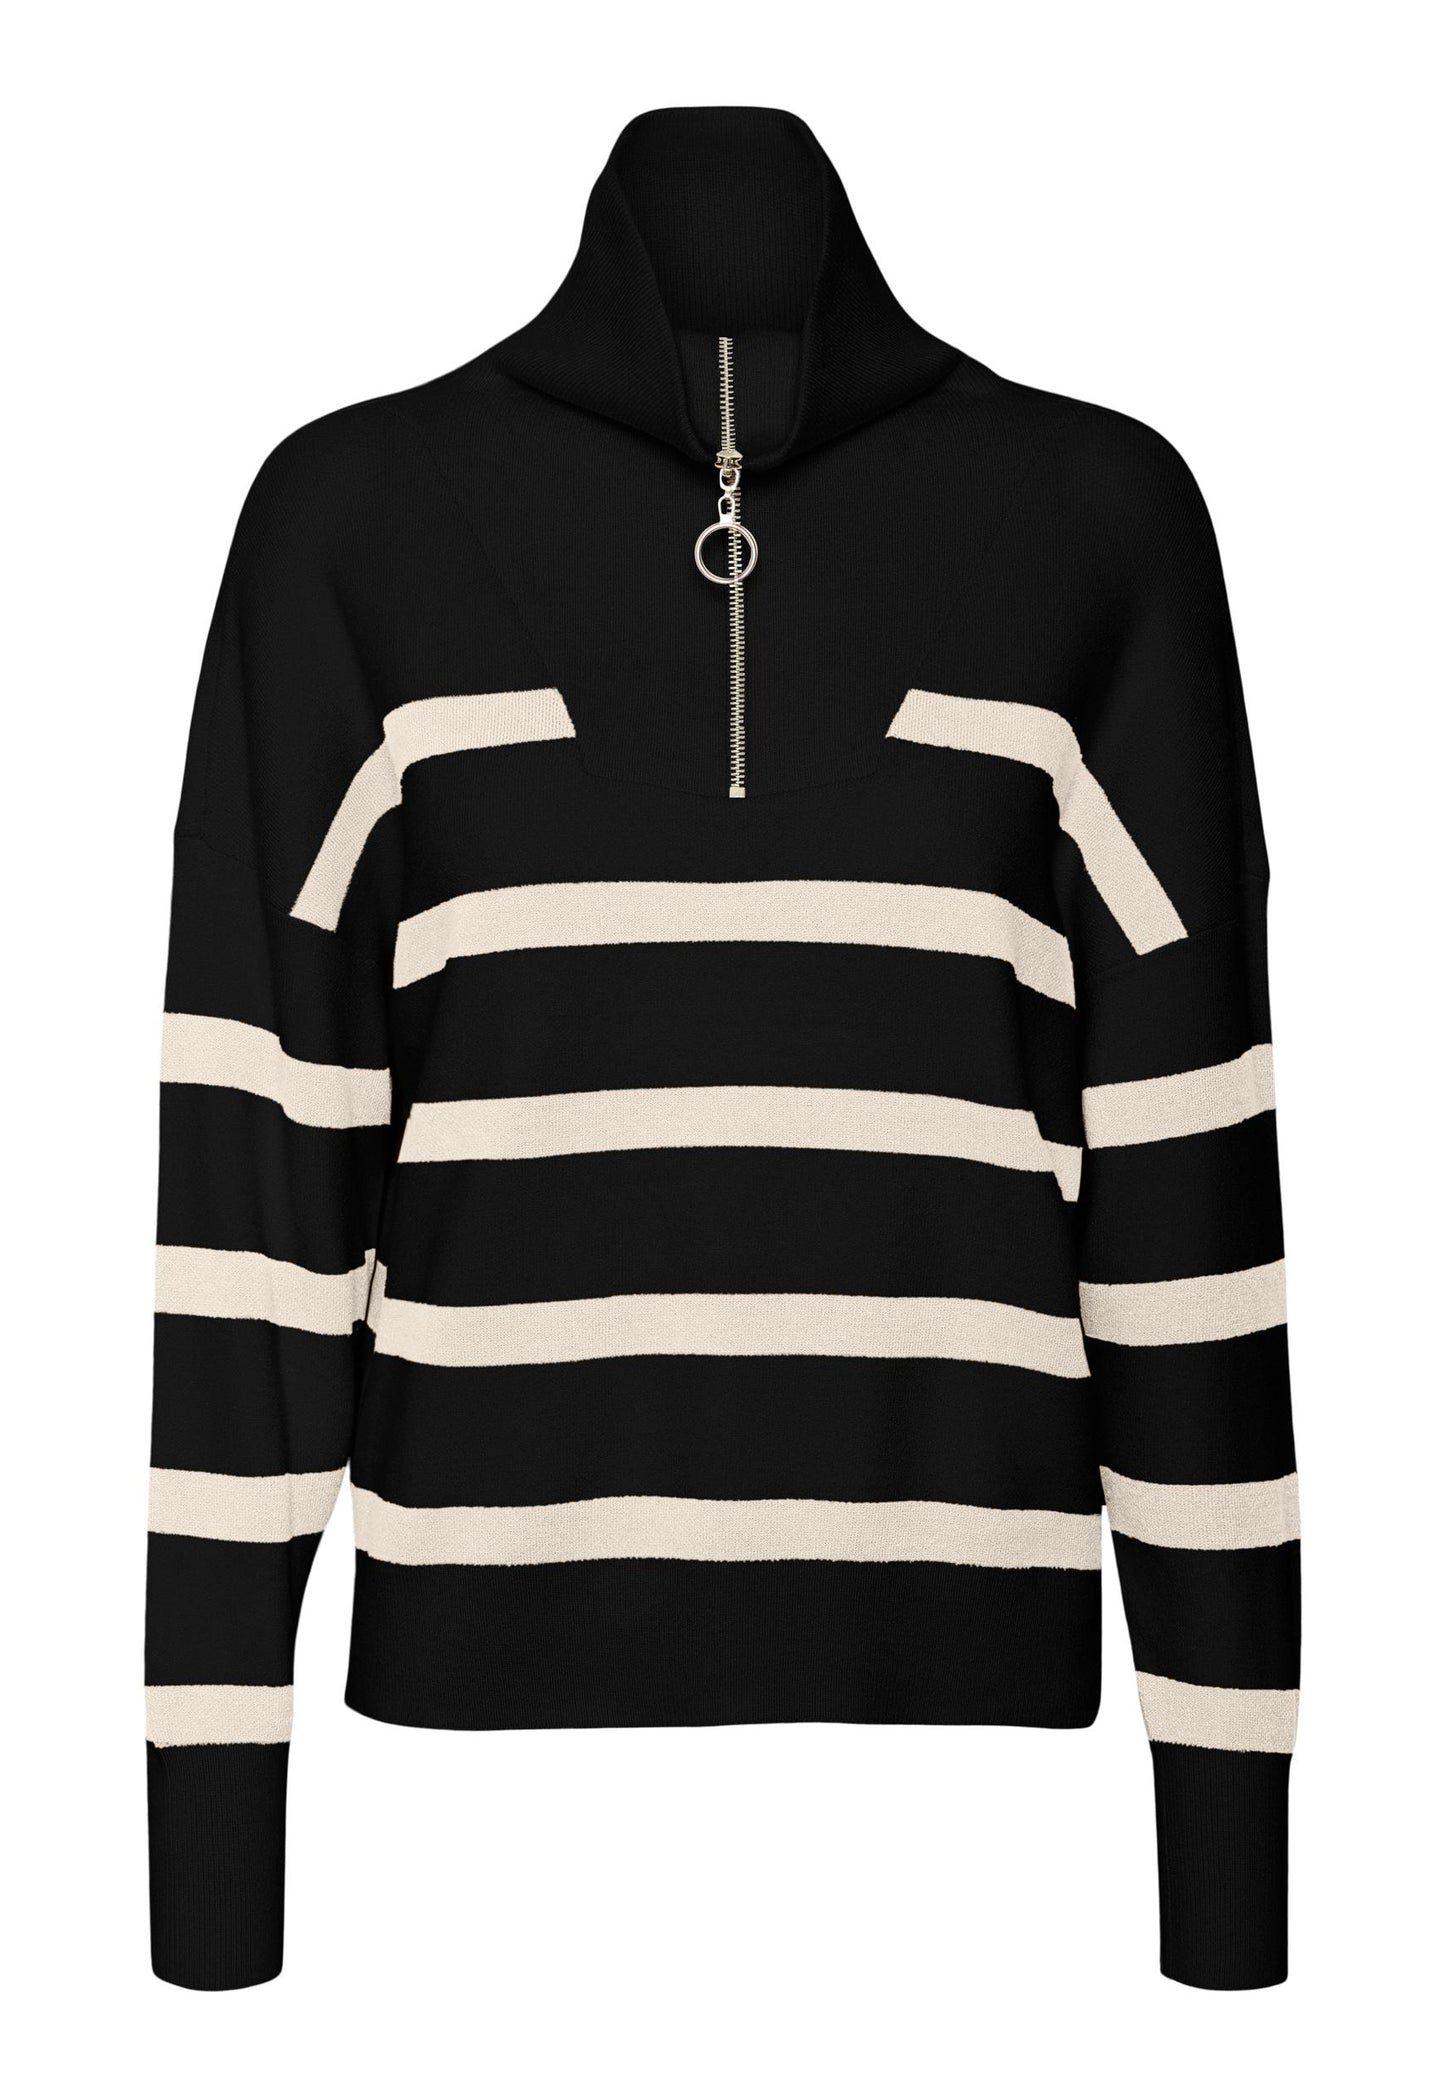 VERO MODA Saba Soft Knit Stripe Half Zip High Neck Jumper in Black & Cream - One Nation Clothing